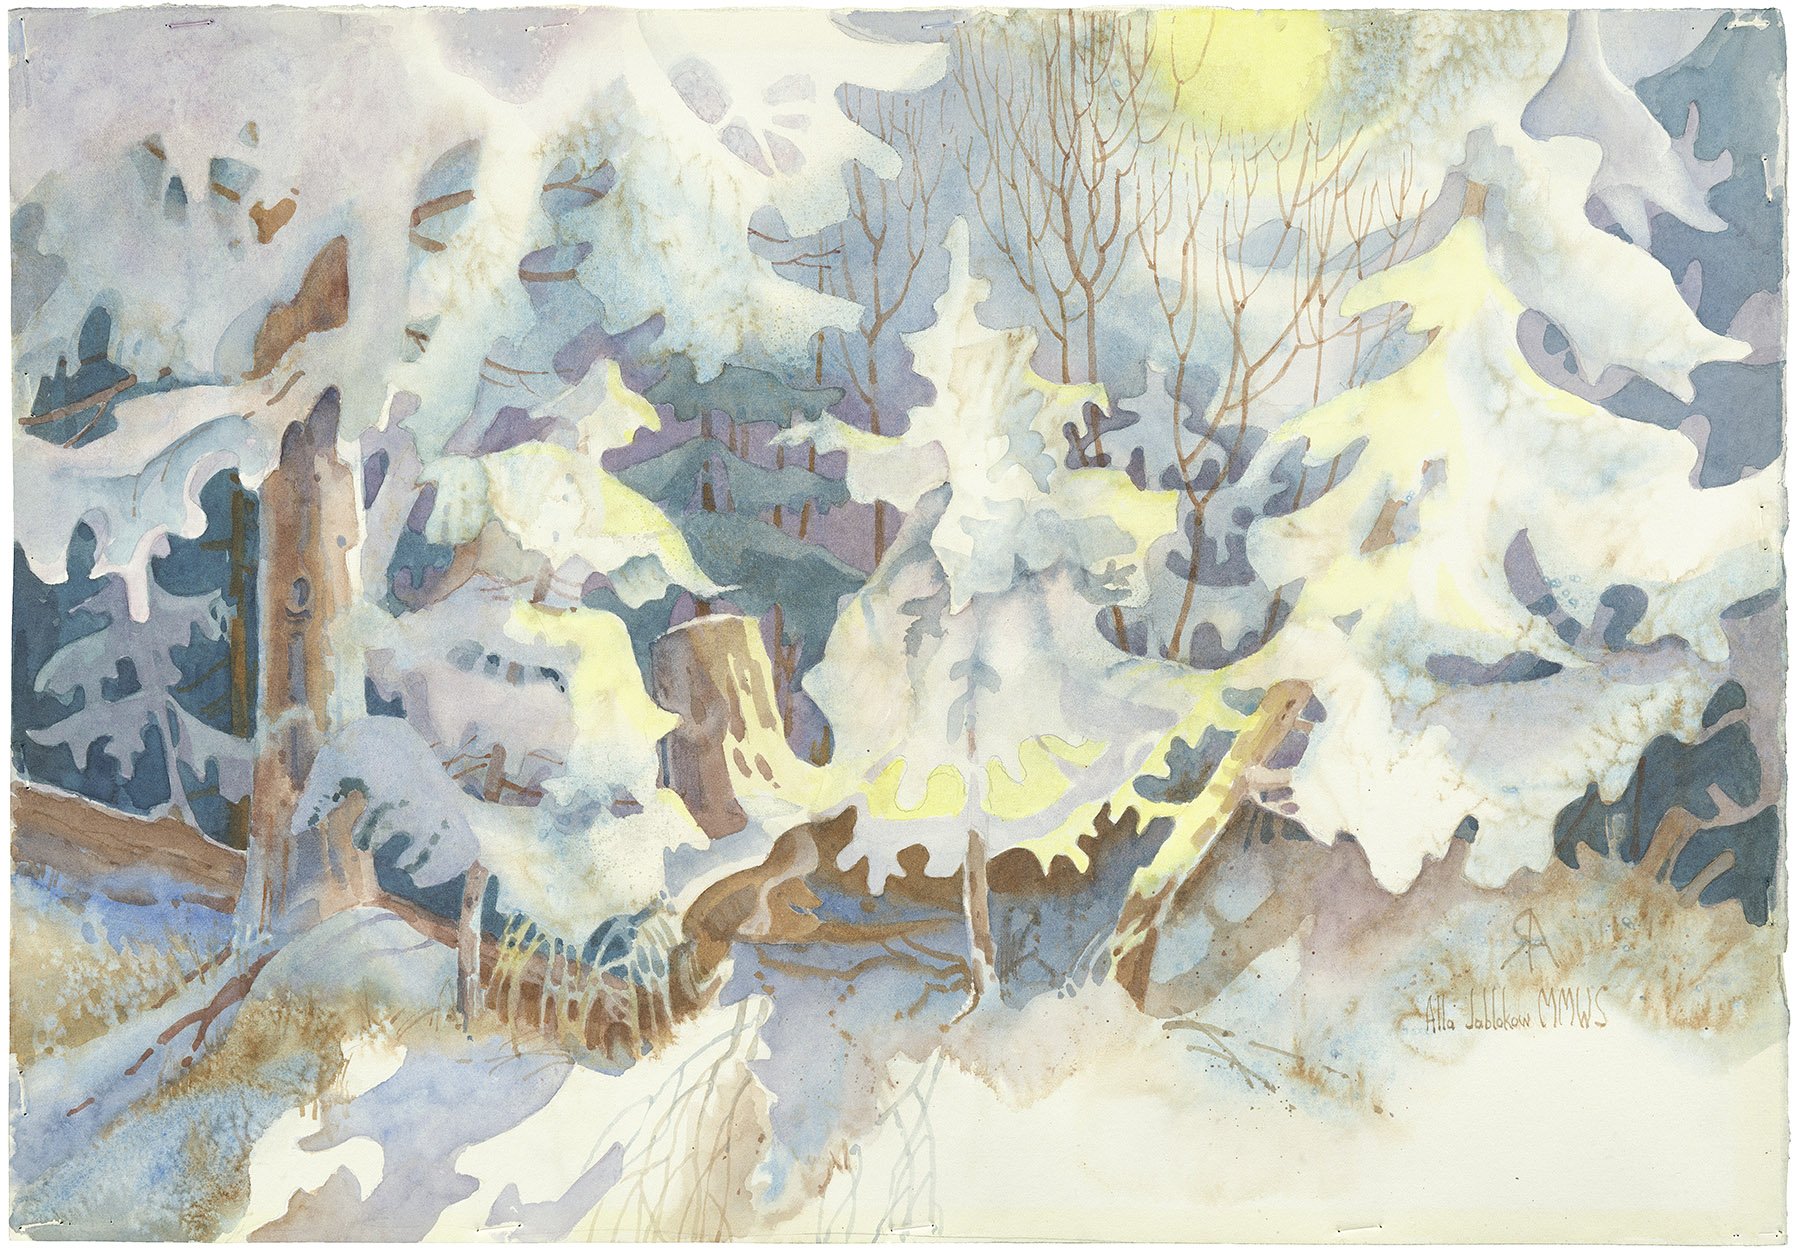 A Winter Night's Dream 1-982